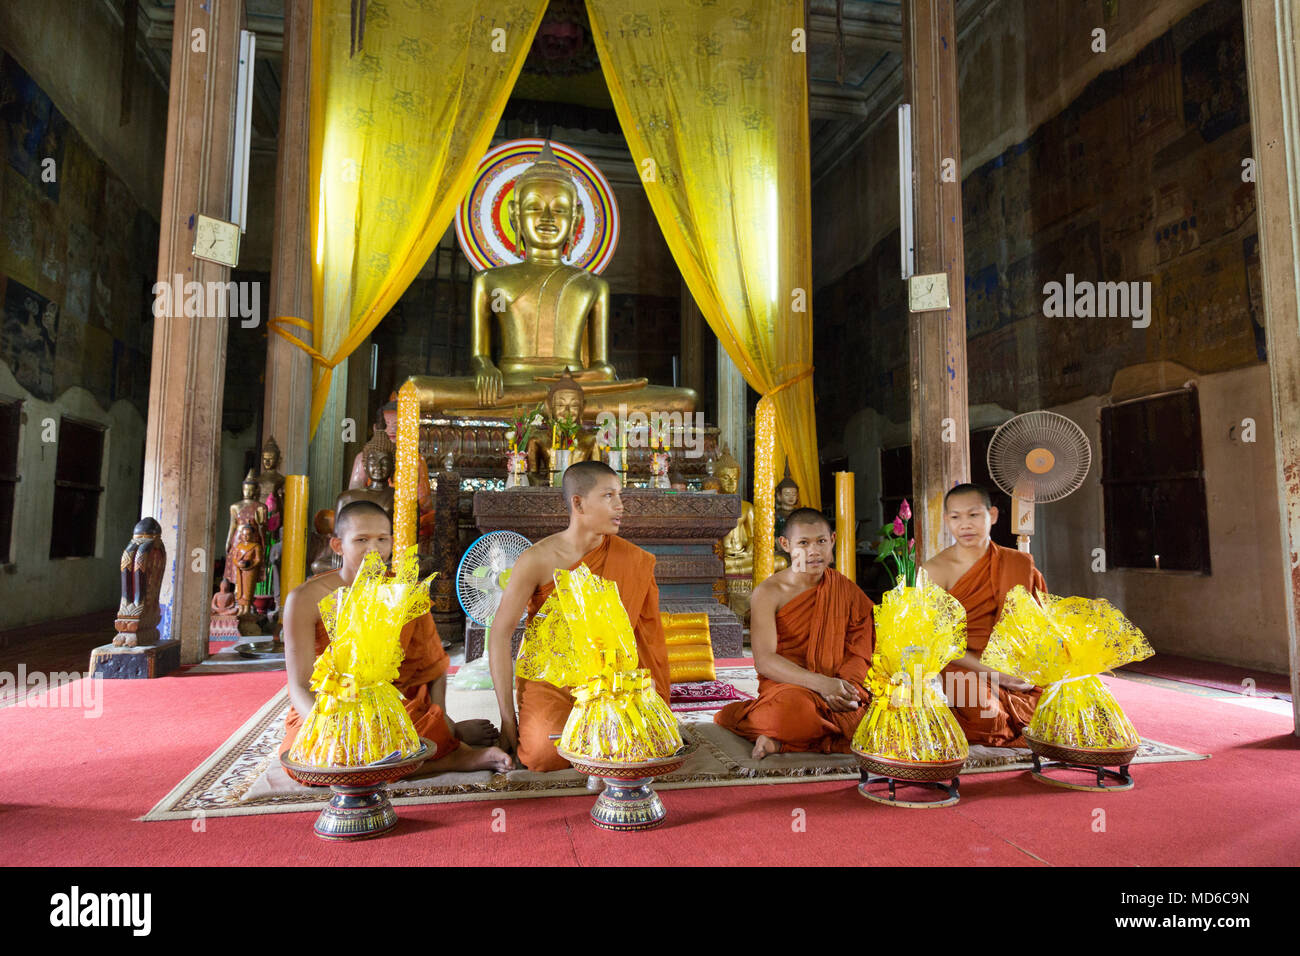 Cambodge - quatre moines moines bouddhistes au cours d'une cérémonie au temple d'un sanctuaire bouddhiste, Siem Reap, Cambodge Asie Banque D'Images